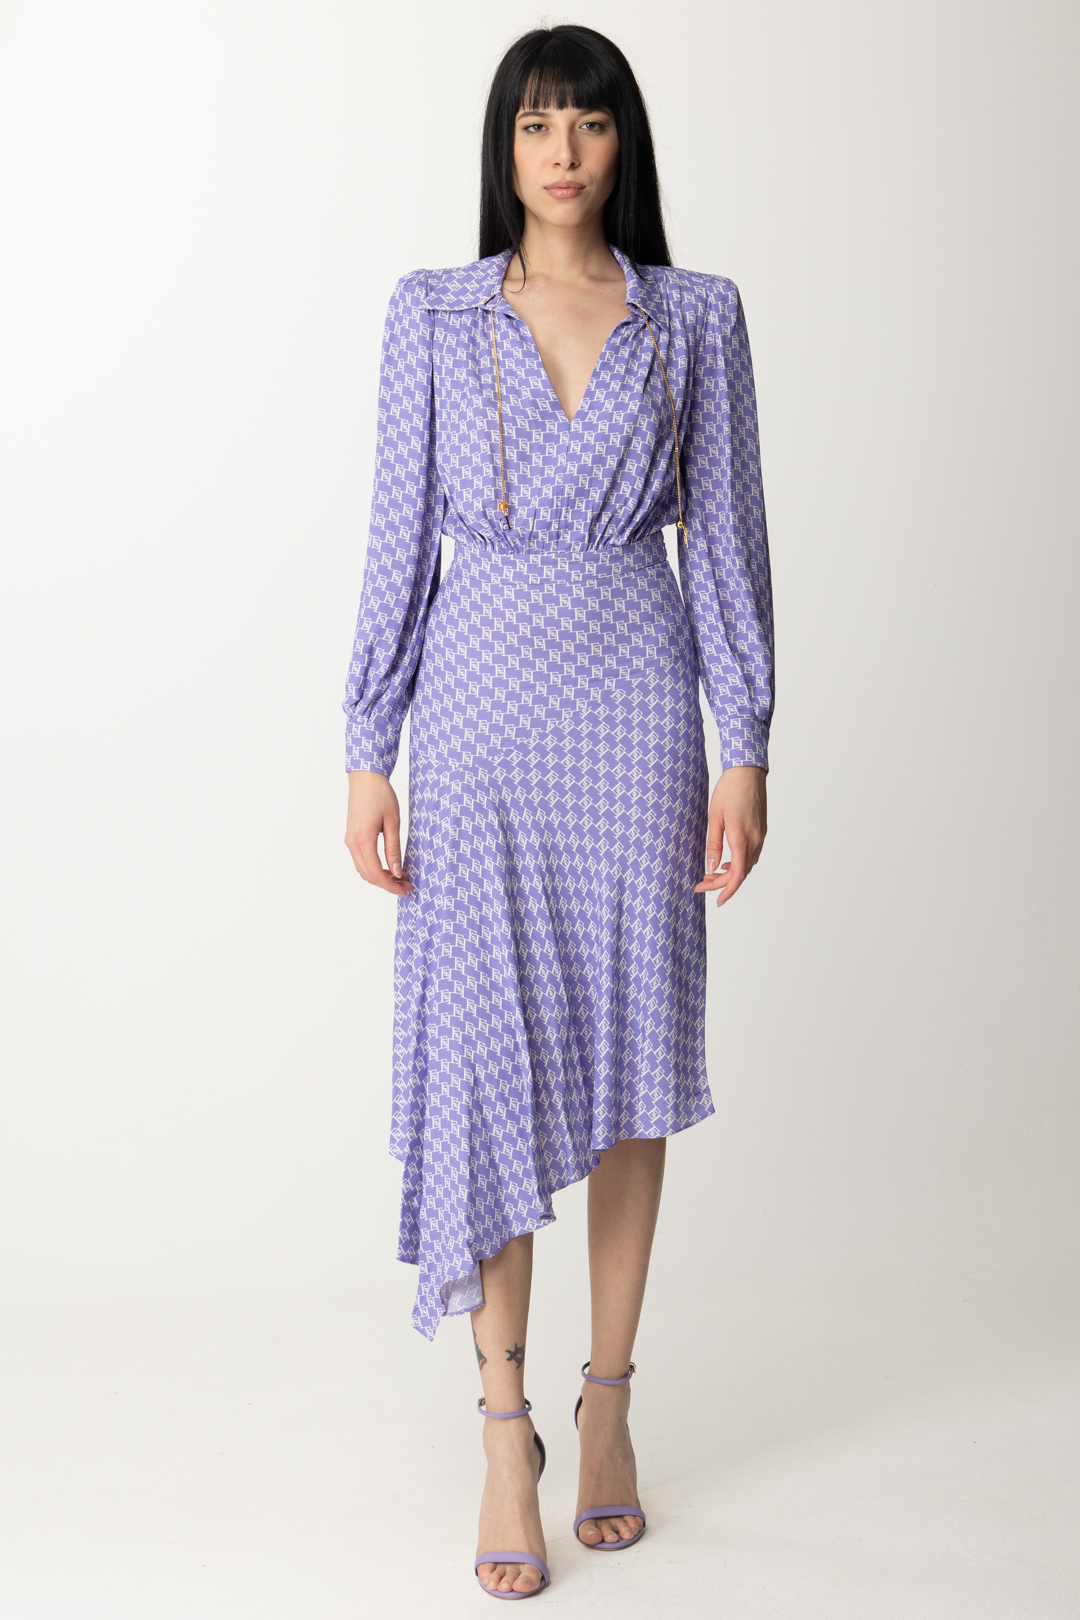 Podgląd: Elisabetta Franchi Asymetryczna sukienka midi z nadrukiem z logo IRIS/BURRO